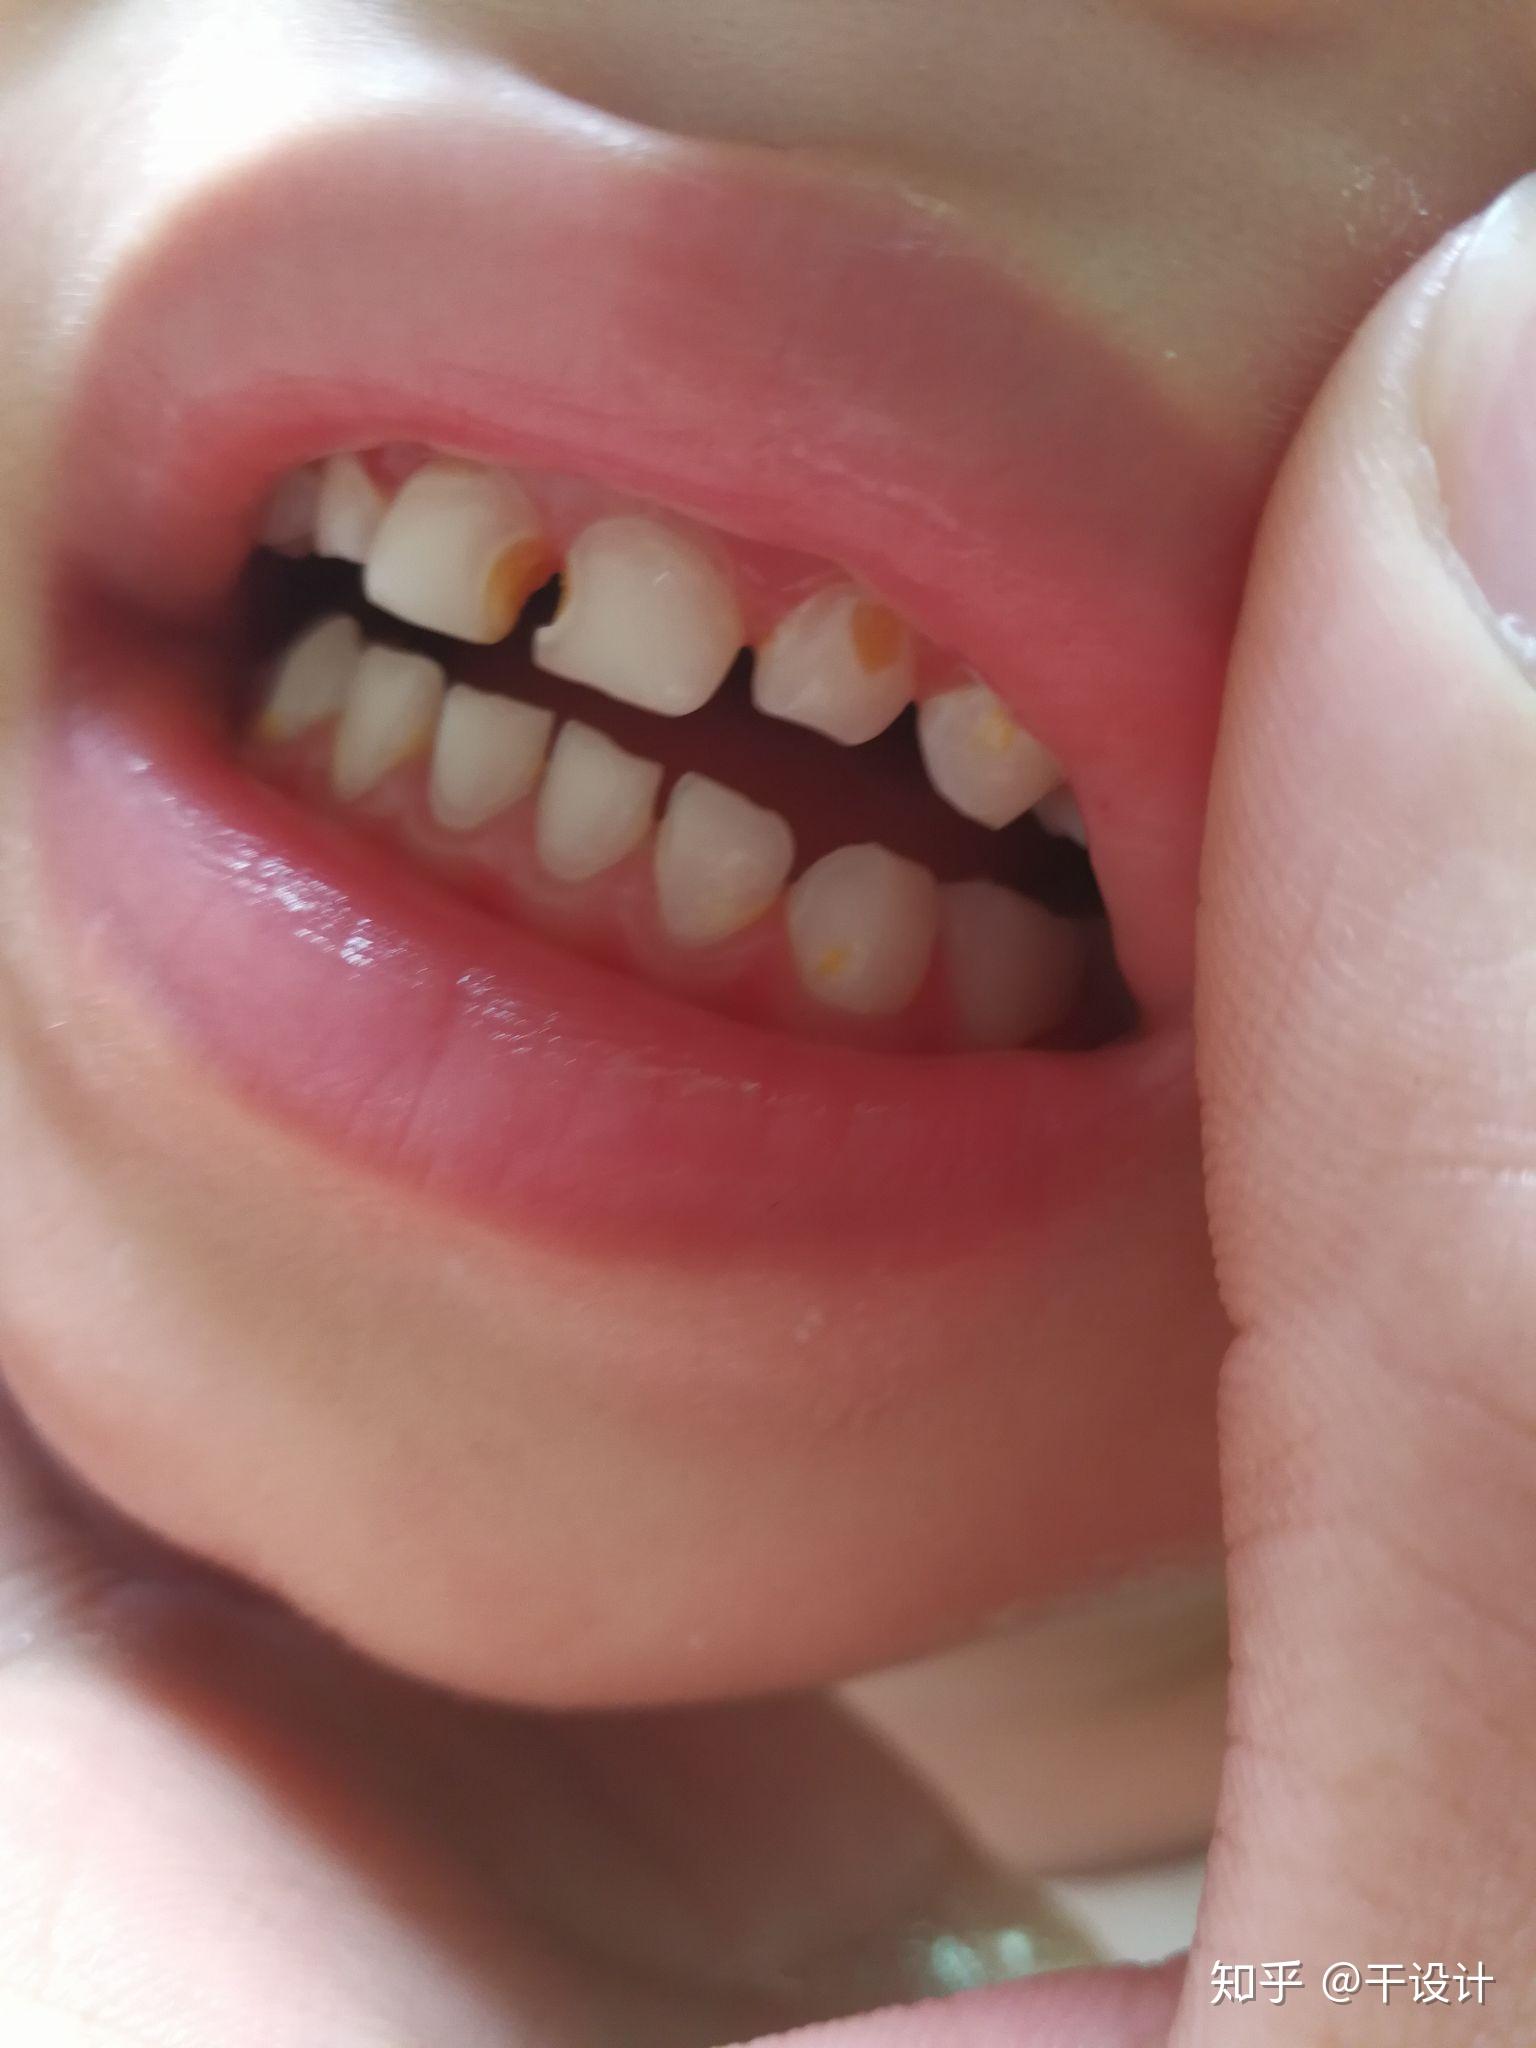 小孩牙齿这样是什么问题